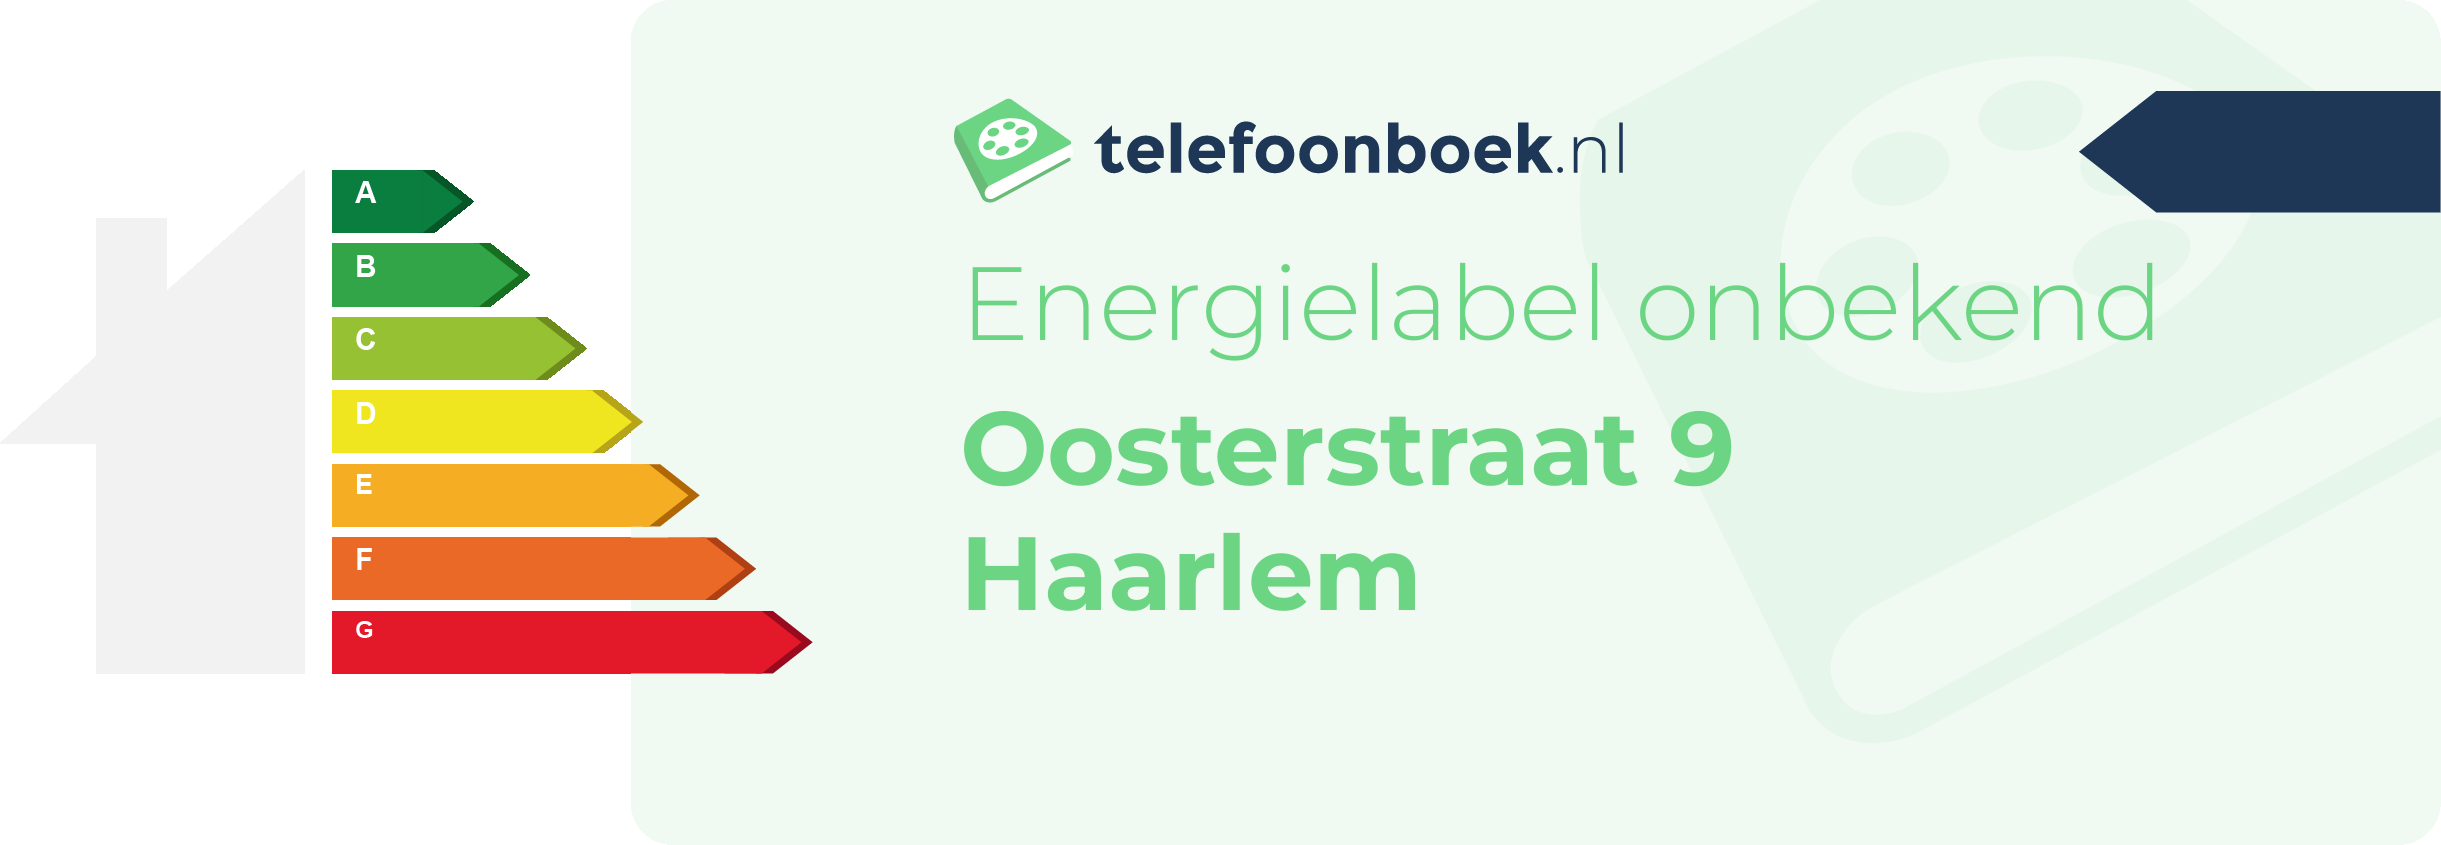 Energielabel Oosterstraat 9 Haarlem